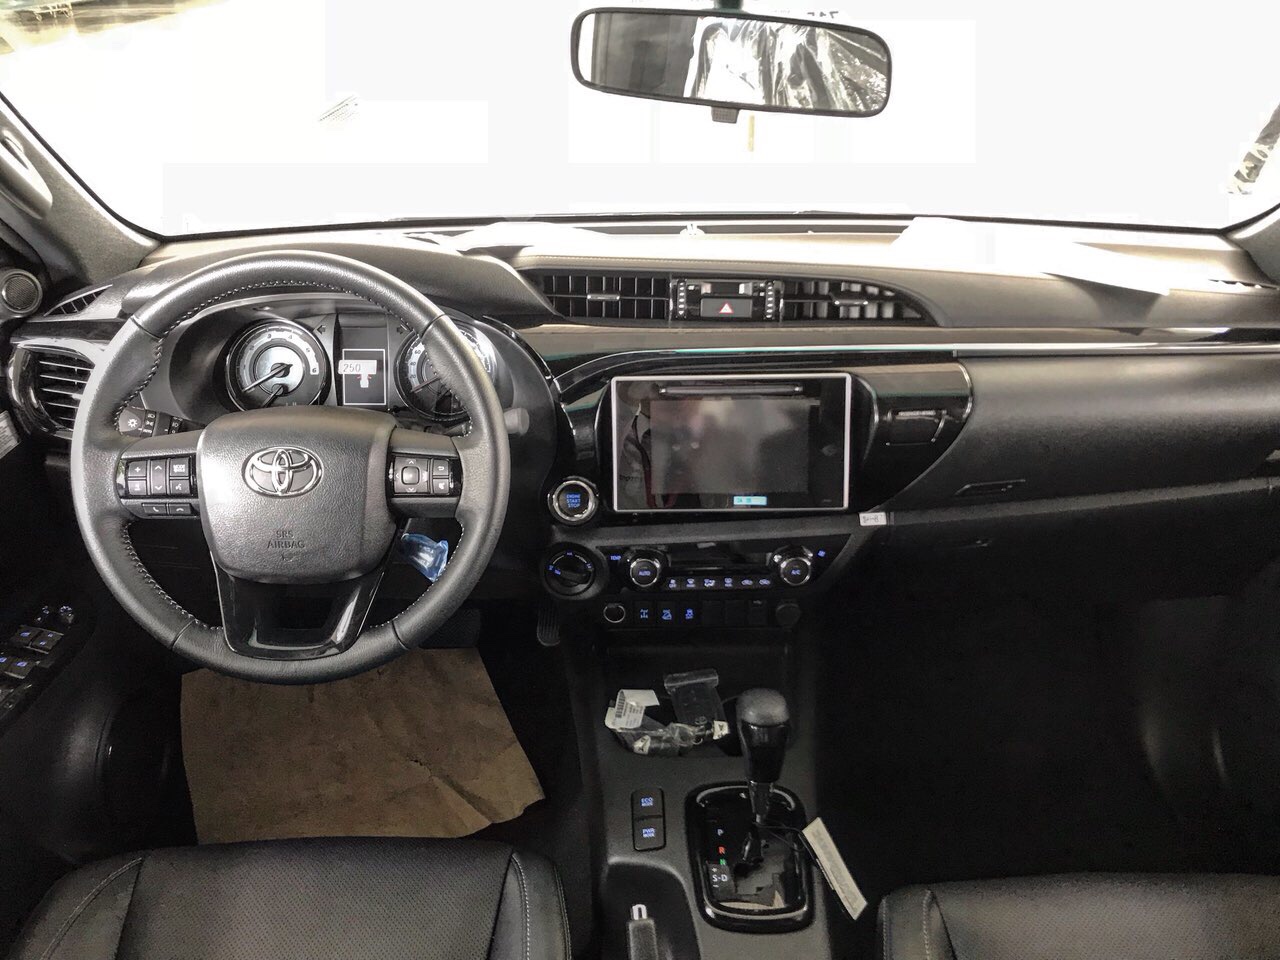 Phần khoang lái nội thất xe Toyota Hilux 2020